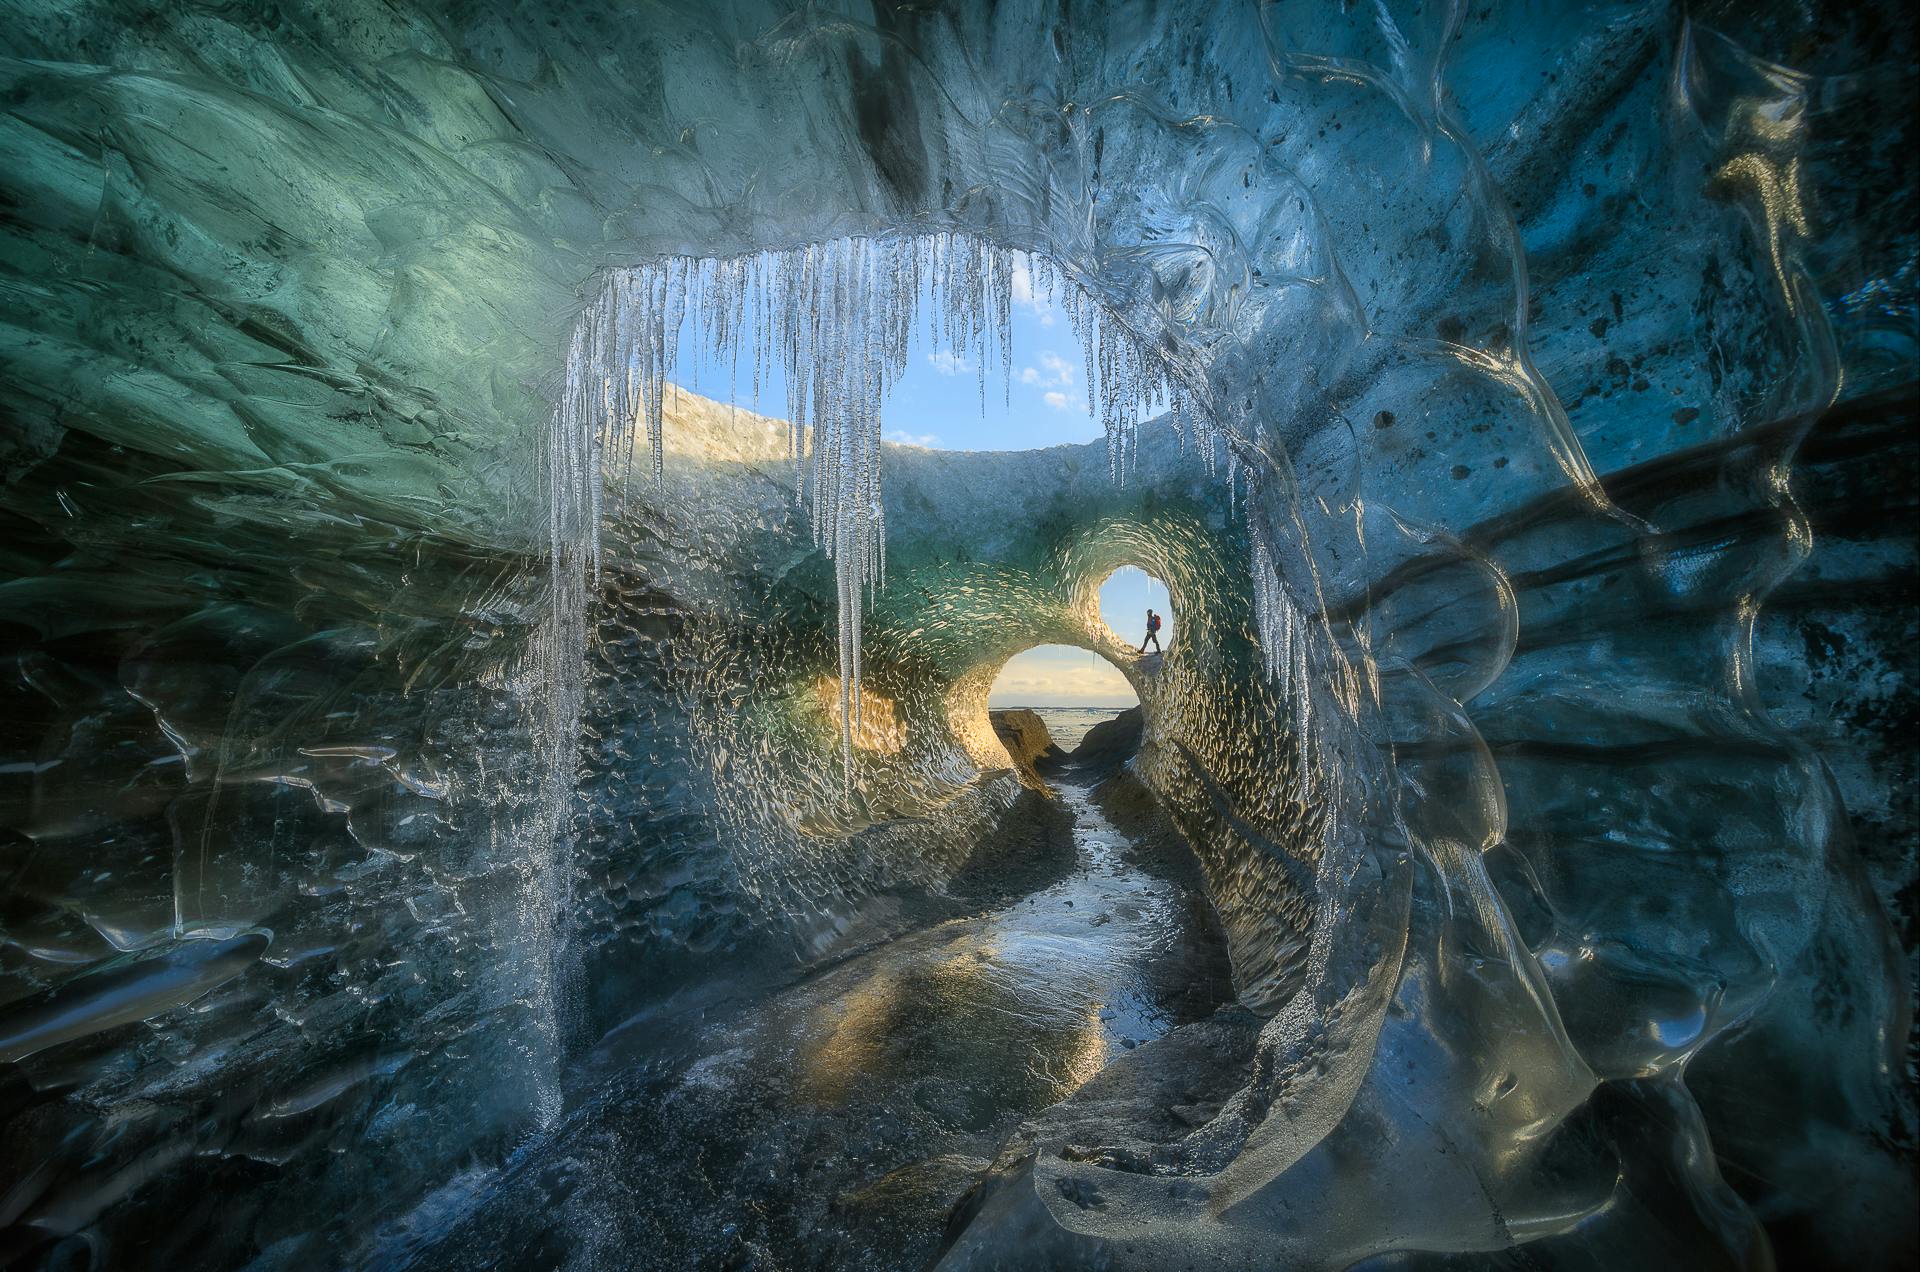 Une visite dans une grotte de glace bleue fascinante est quelque chose qui restera avec vous toute la vie